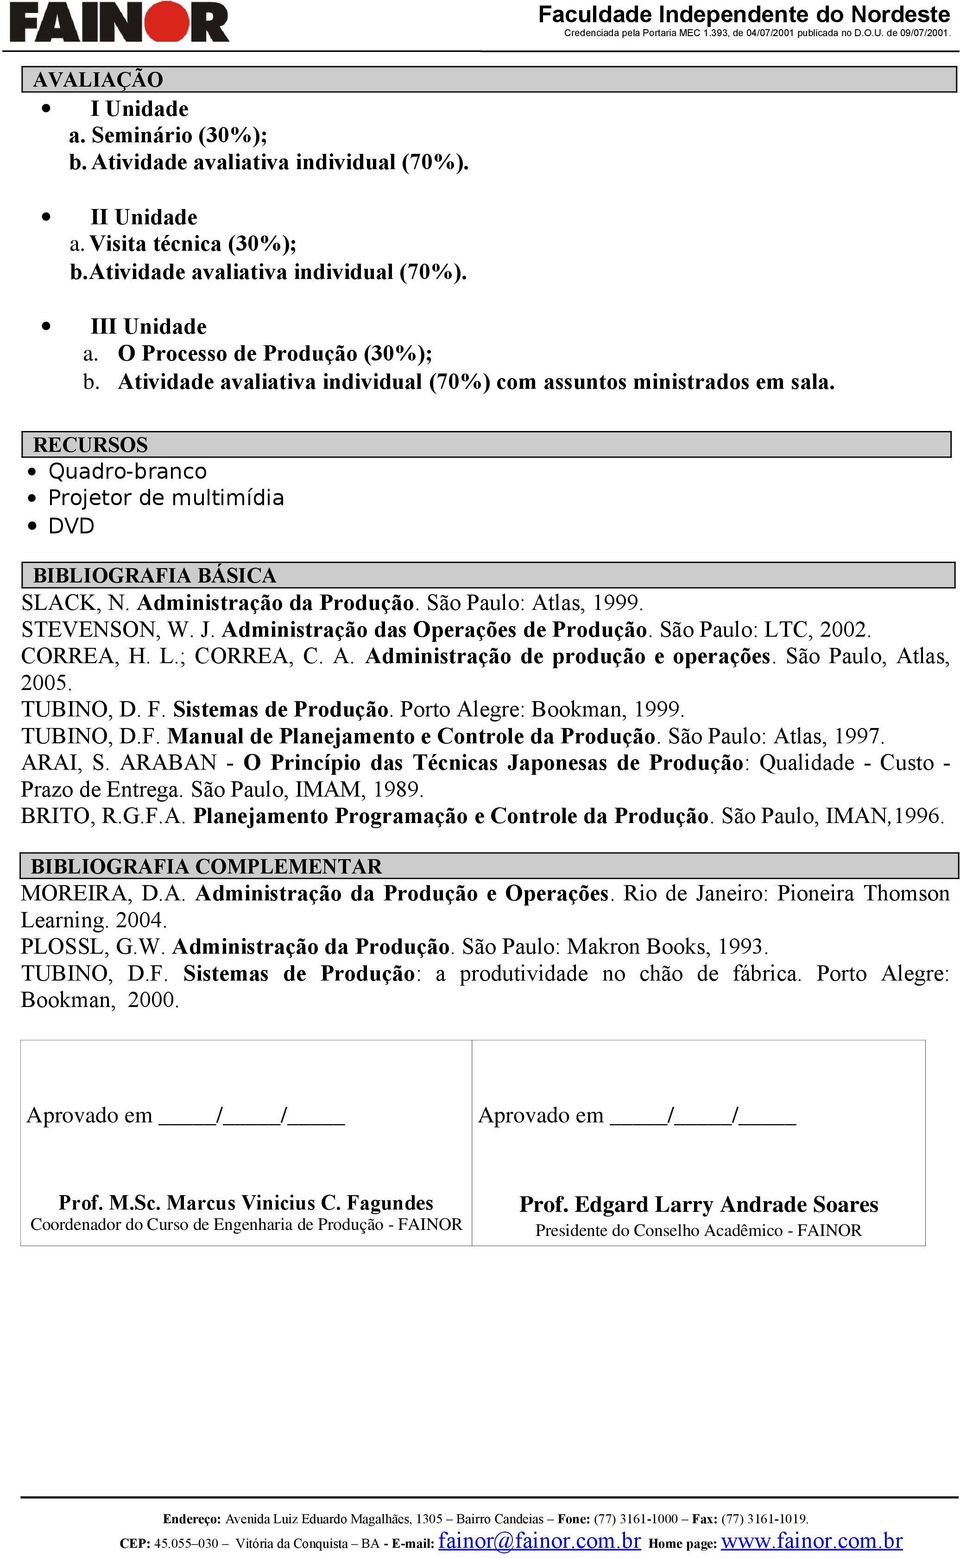 Administração da Produção. São Paulo: Atlas, 1999. STEVENSON, W. J. Administração das Operações de Produção. São Paulo: LTC, 2002. CORREA, H. L.; CORREA, C. A. Administração de produção e operações.